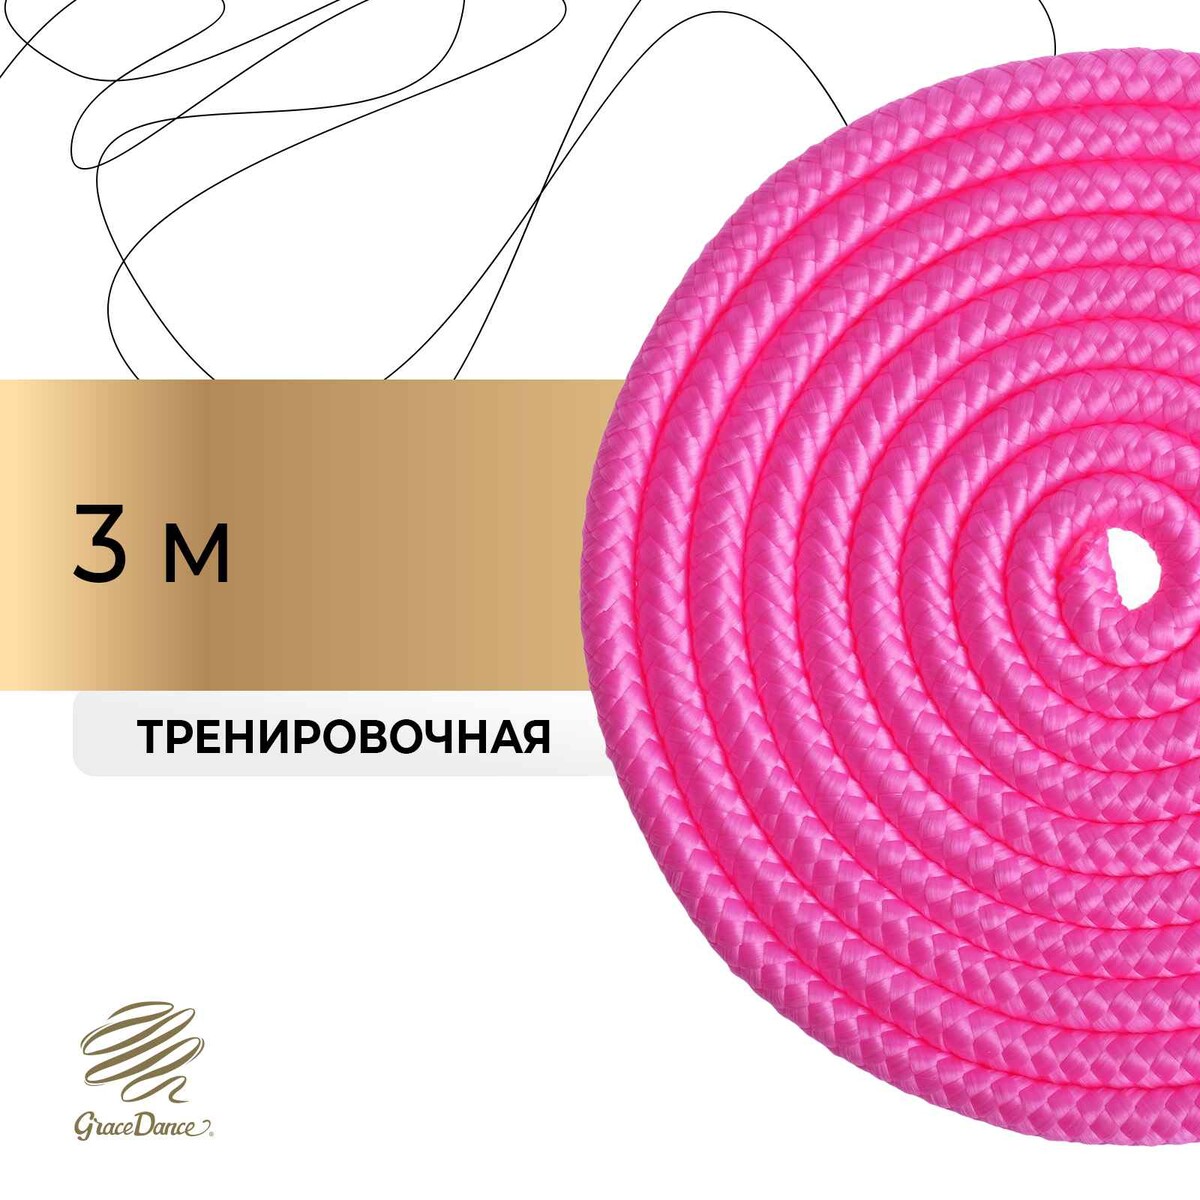 Скакалка для художественной гимнастики grace dance, 3 м, цвет розовый